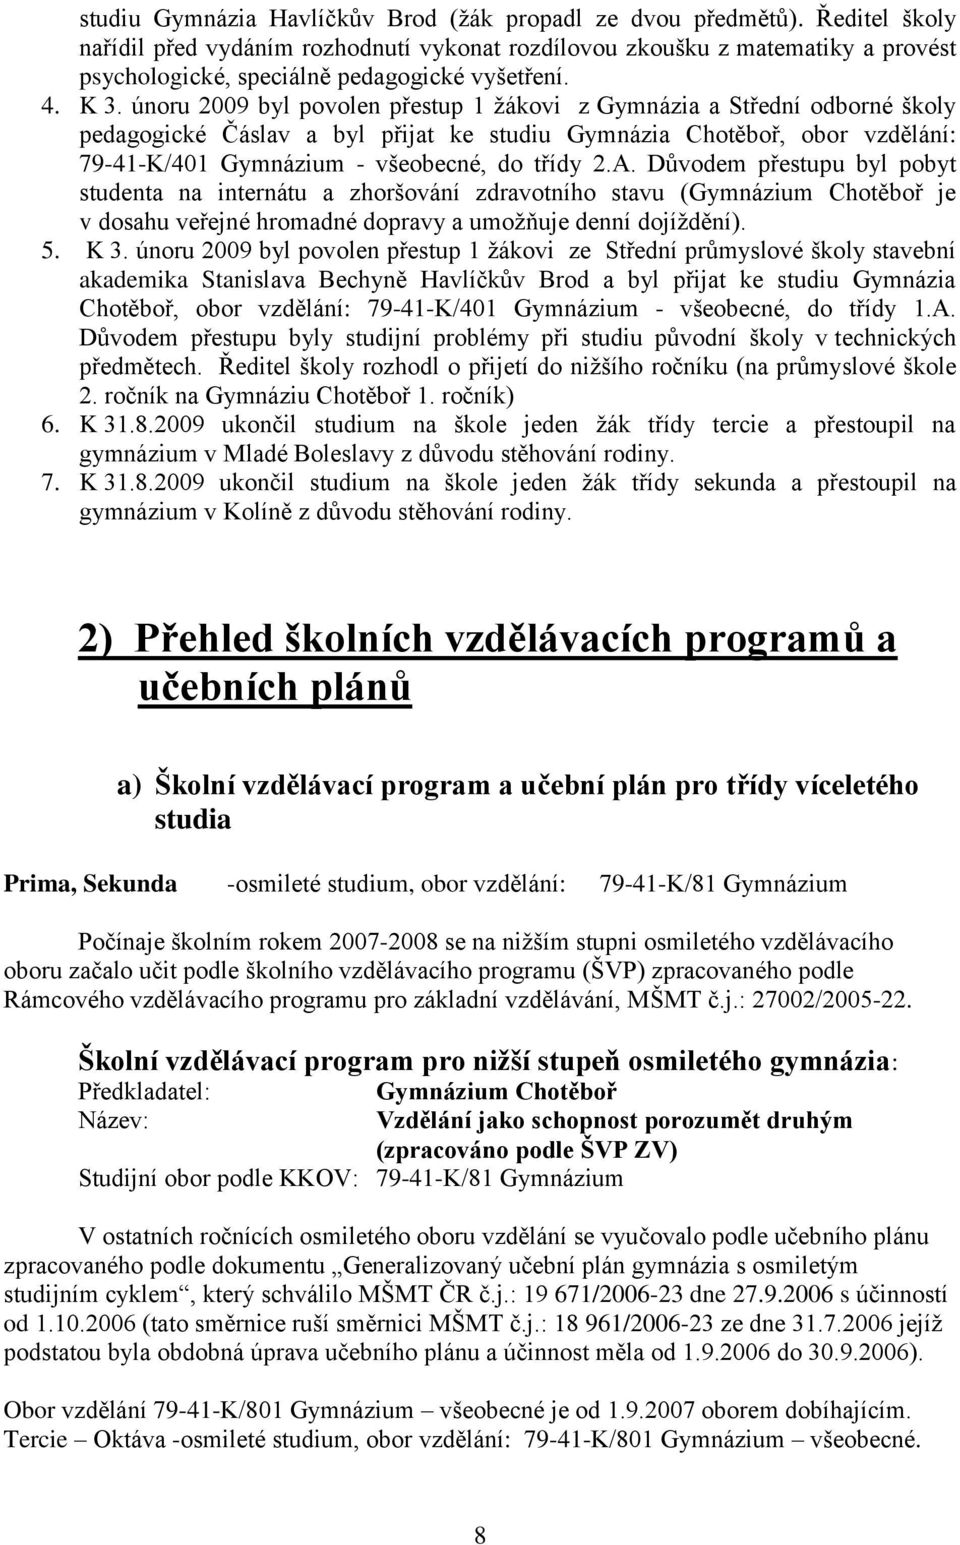 únoru 2009 byl povolen přestup 1 žákovi z Gymnázia a Střední odborné školy pedagogické Čáslav a byl přijat ke studiu Gymnázia Chotěboř, obor vzdělání: 79-41-K/401 Gymnázium - všeobecné, do třídy 2.A.